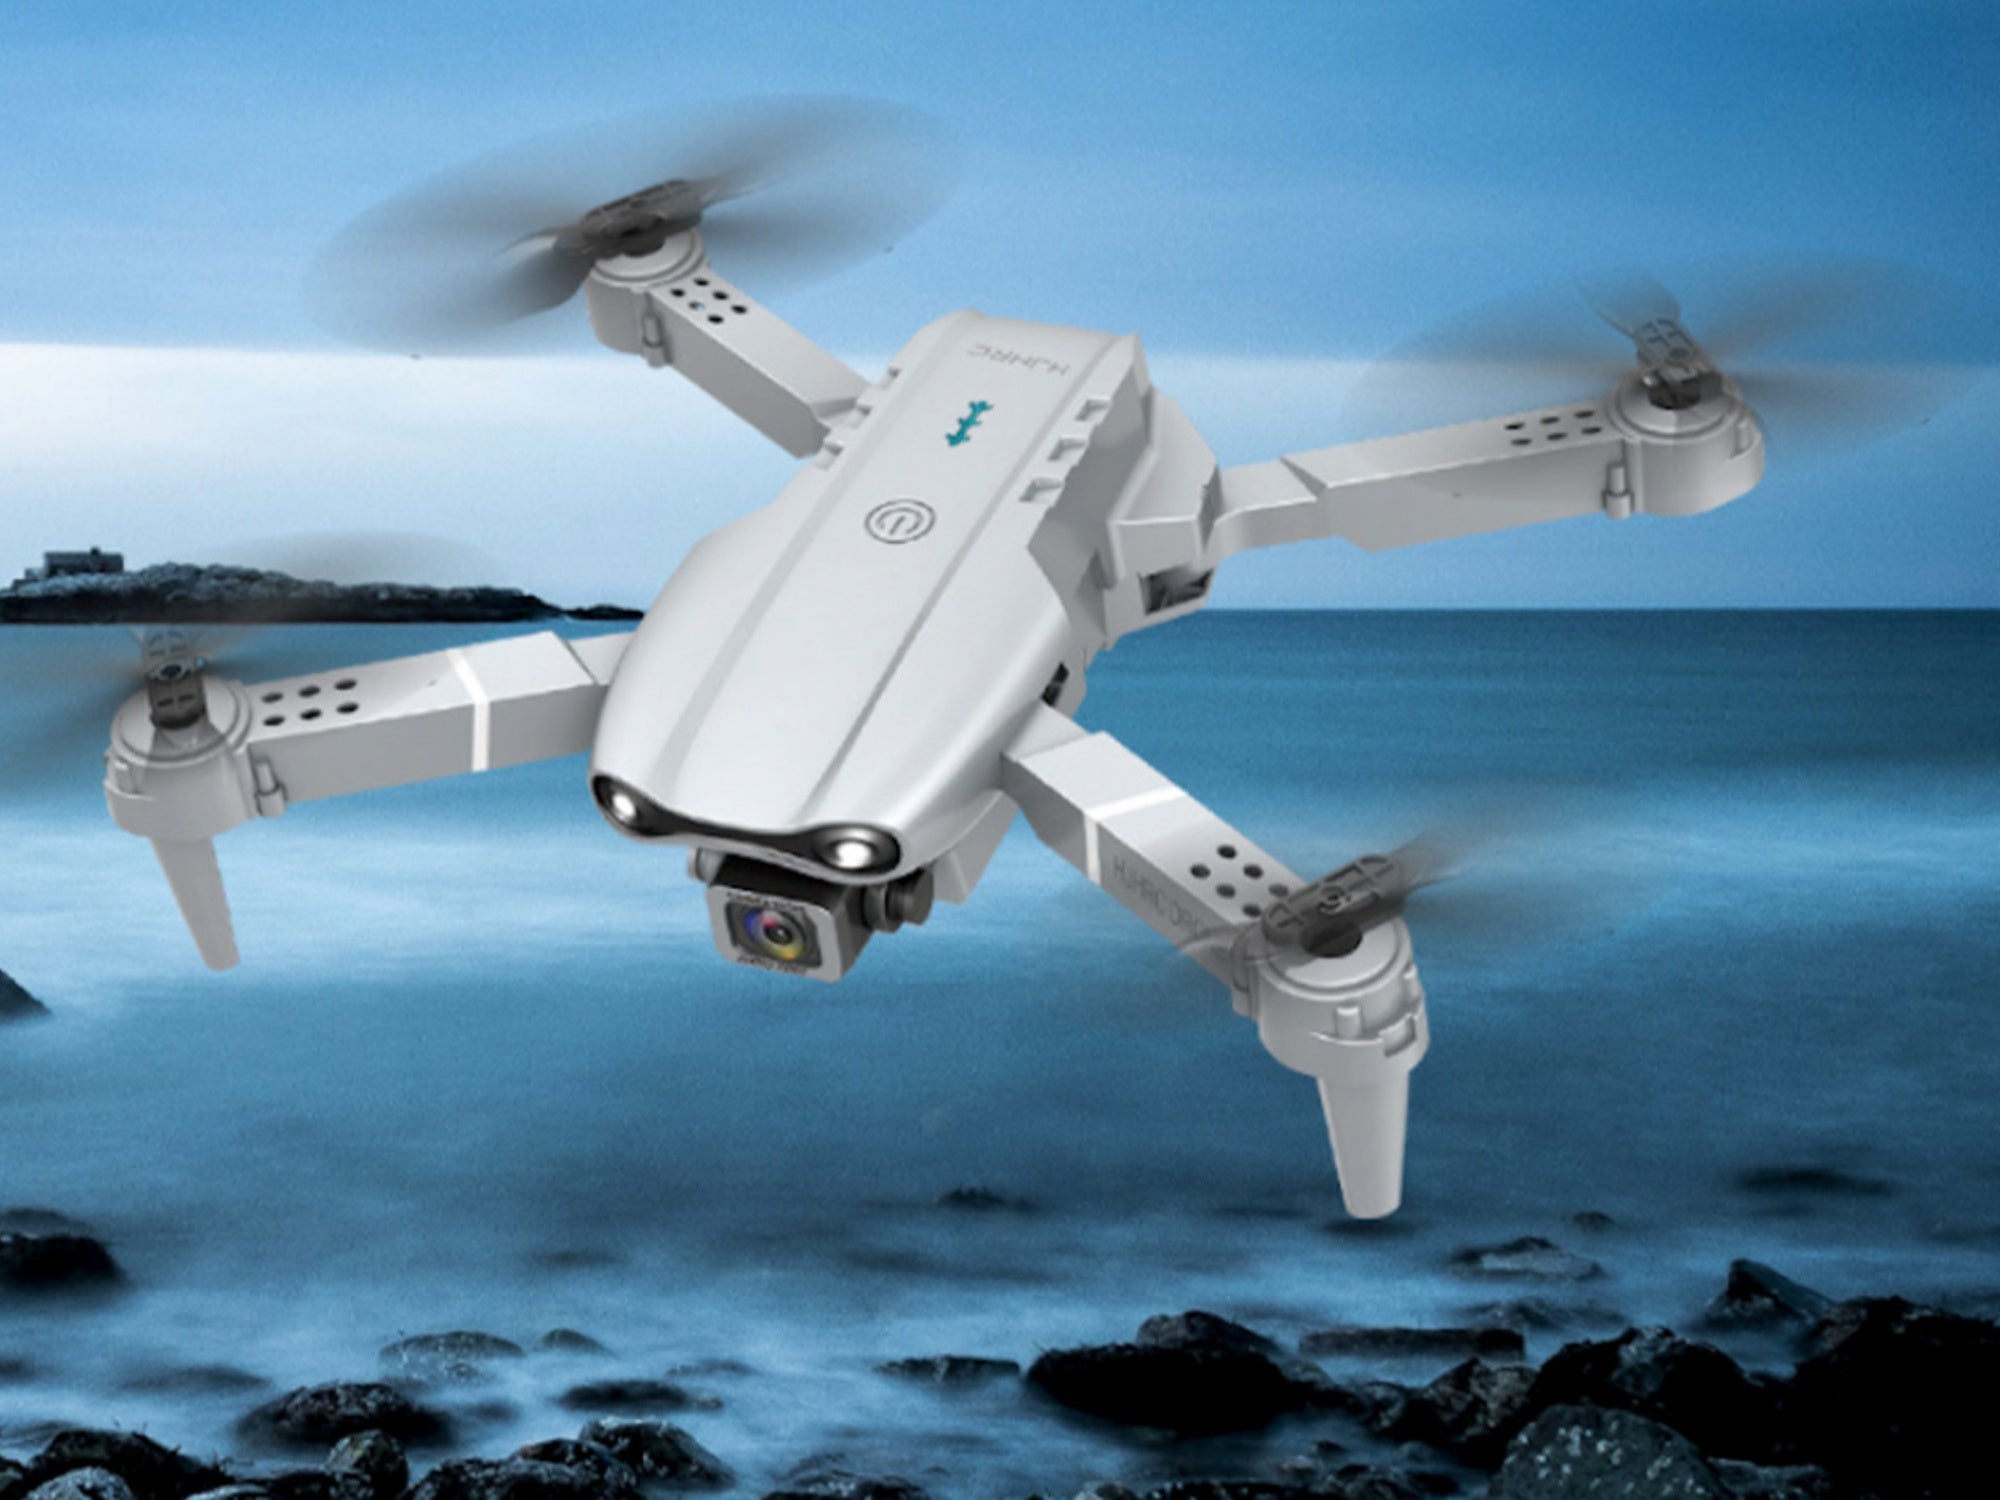 Obtenga una vista de pájaro x dos con este paquete de dron de doble cámara